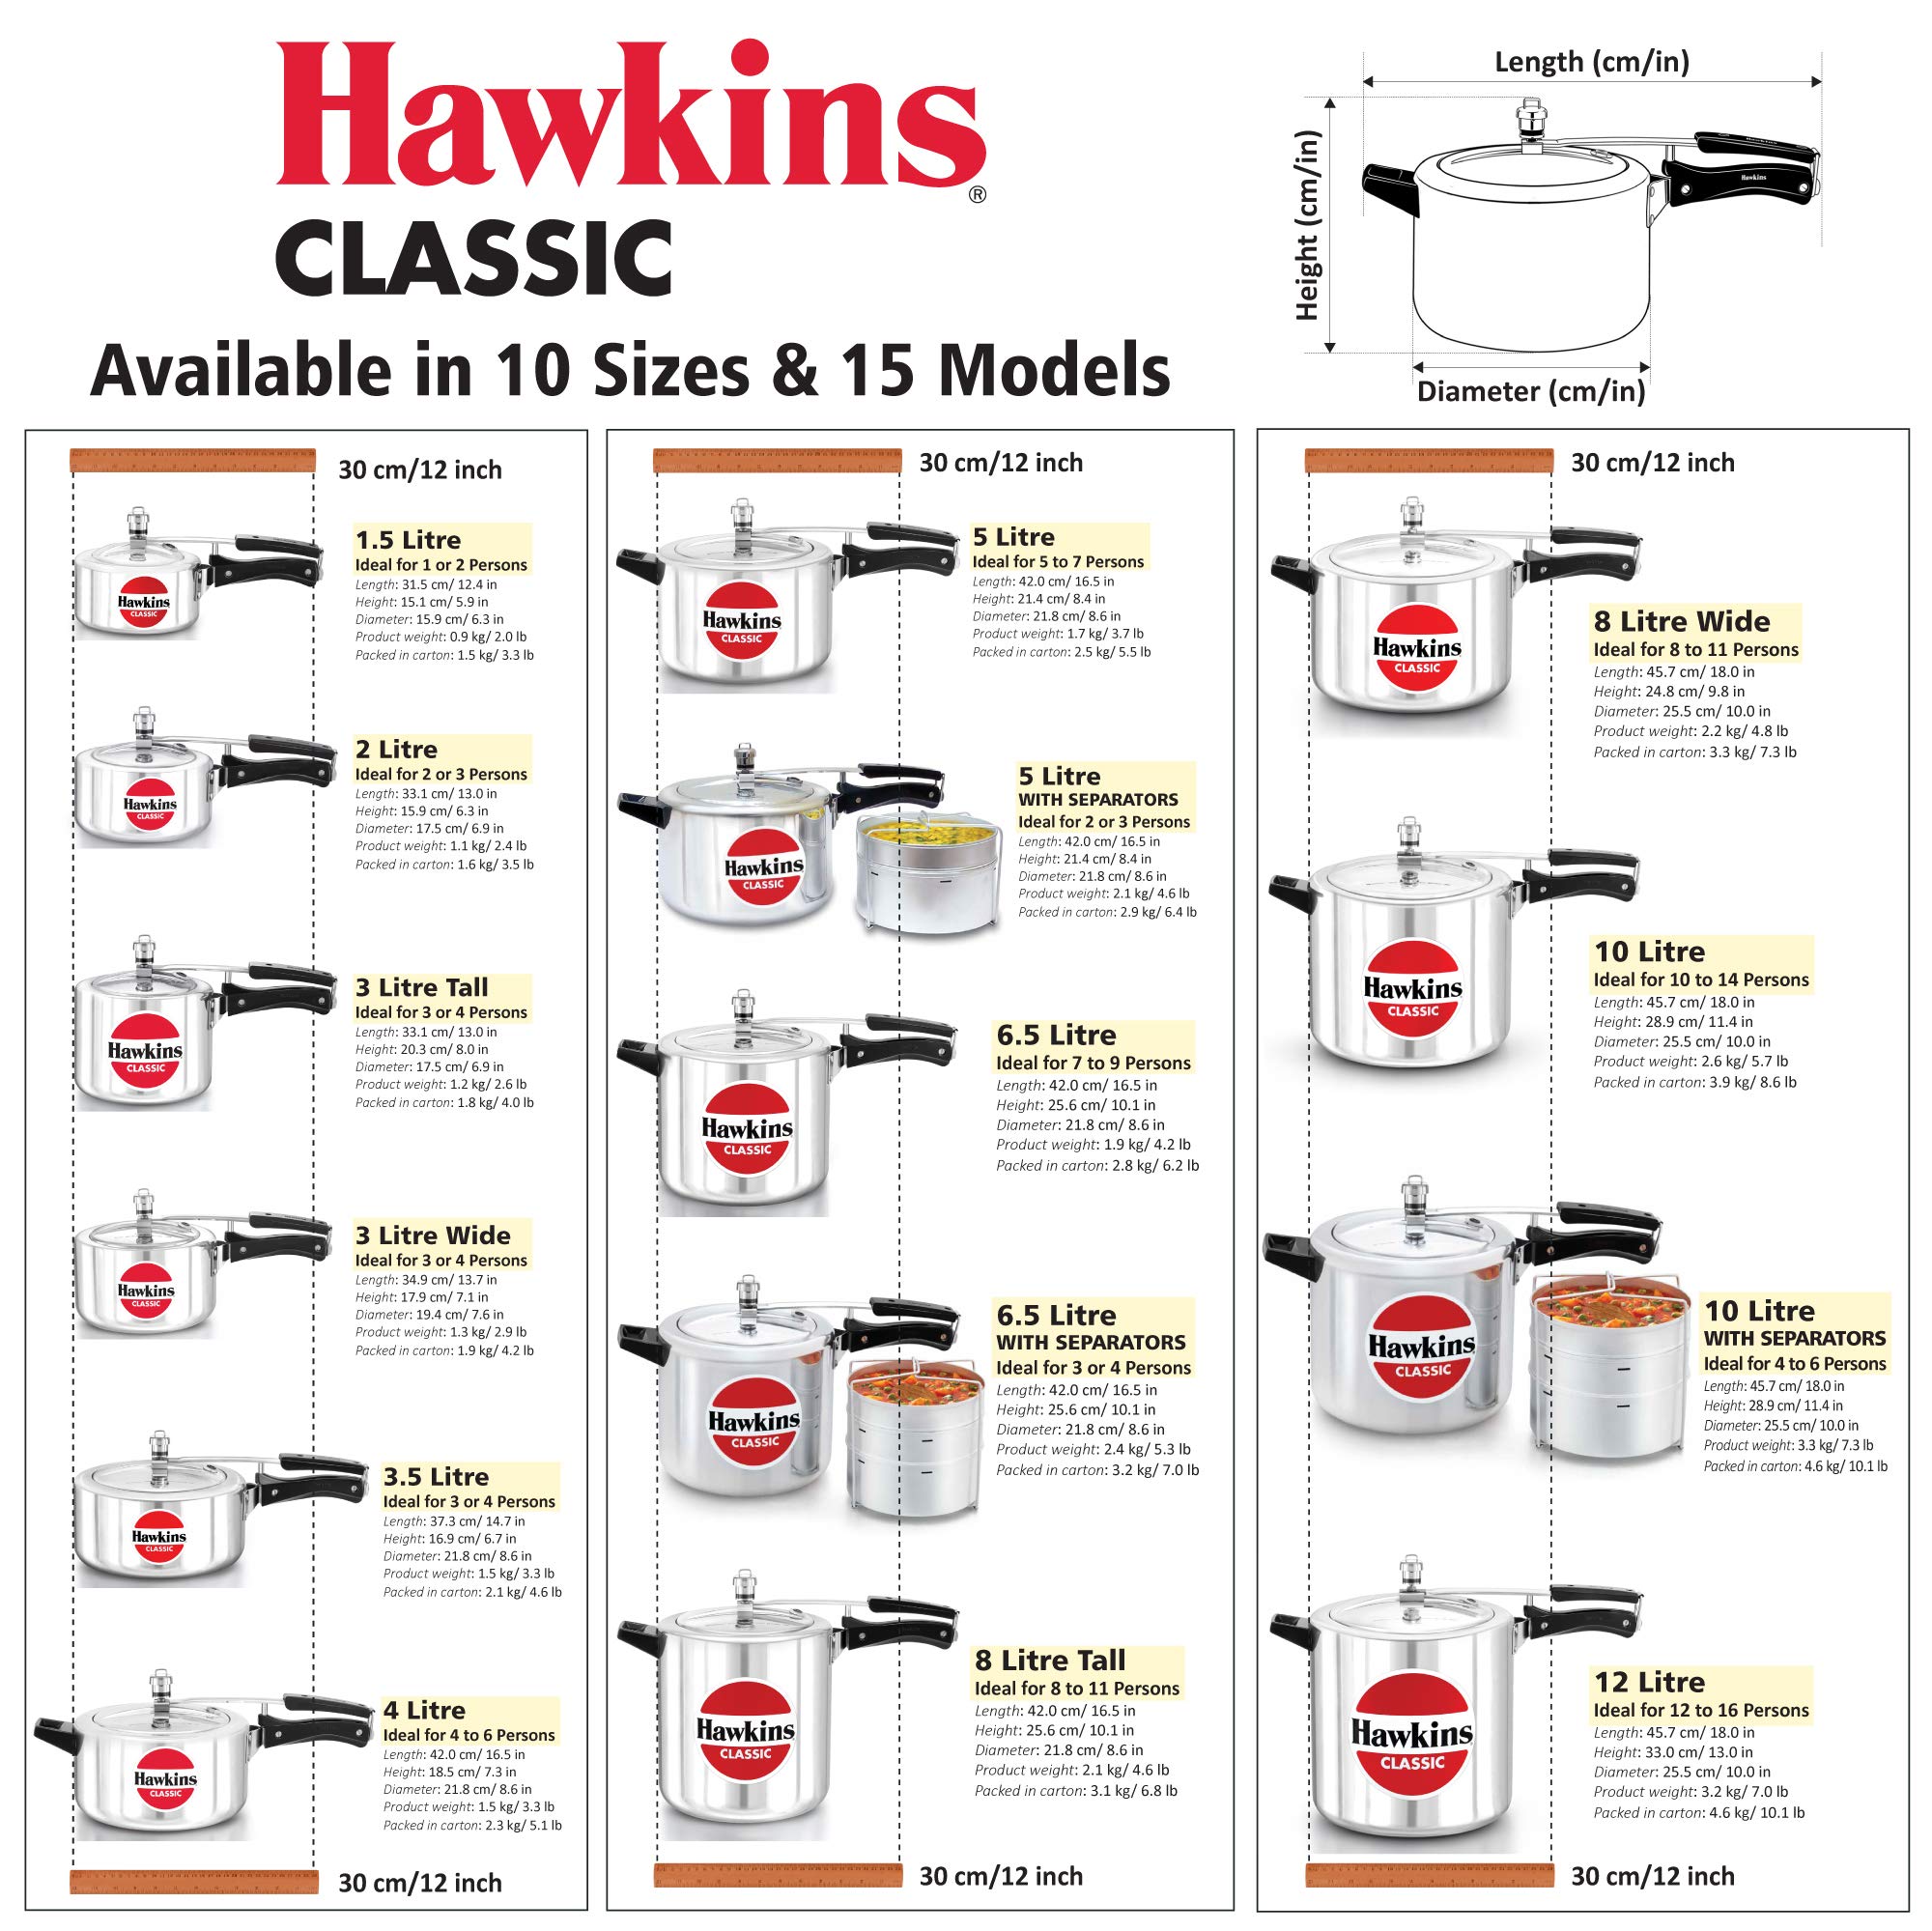 Hawkins Classic Aluminium Pressure Cooker, 3 Litres Taller Body, Silver طنجرة ضغط كلاسيكية من هاوكنز، مصنوعة من الالومنيوم، سعة 3 لتر